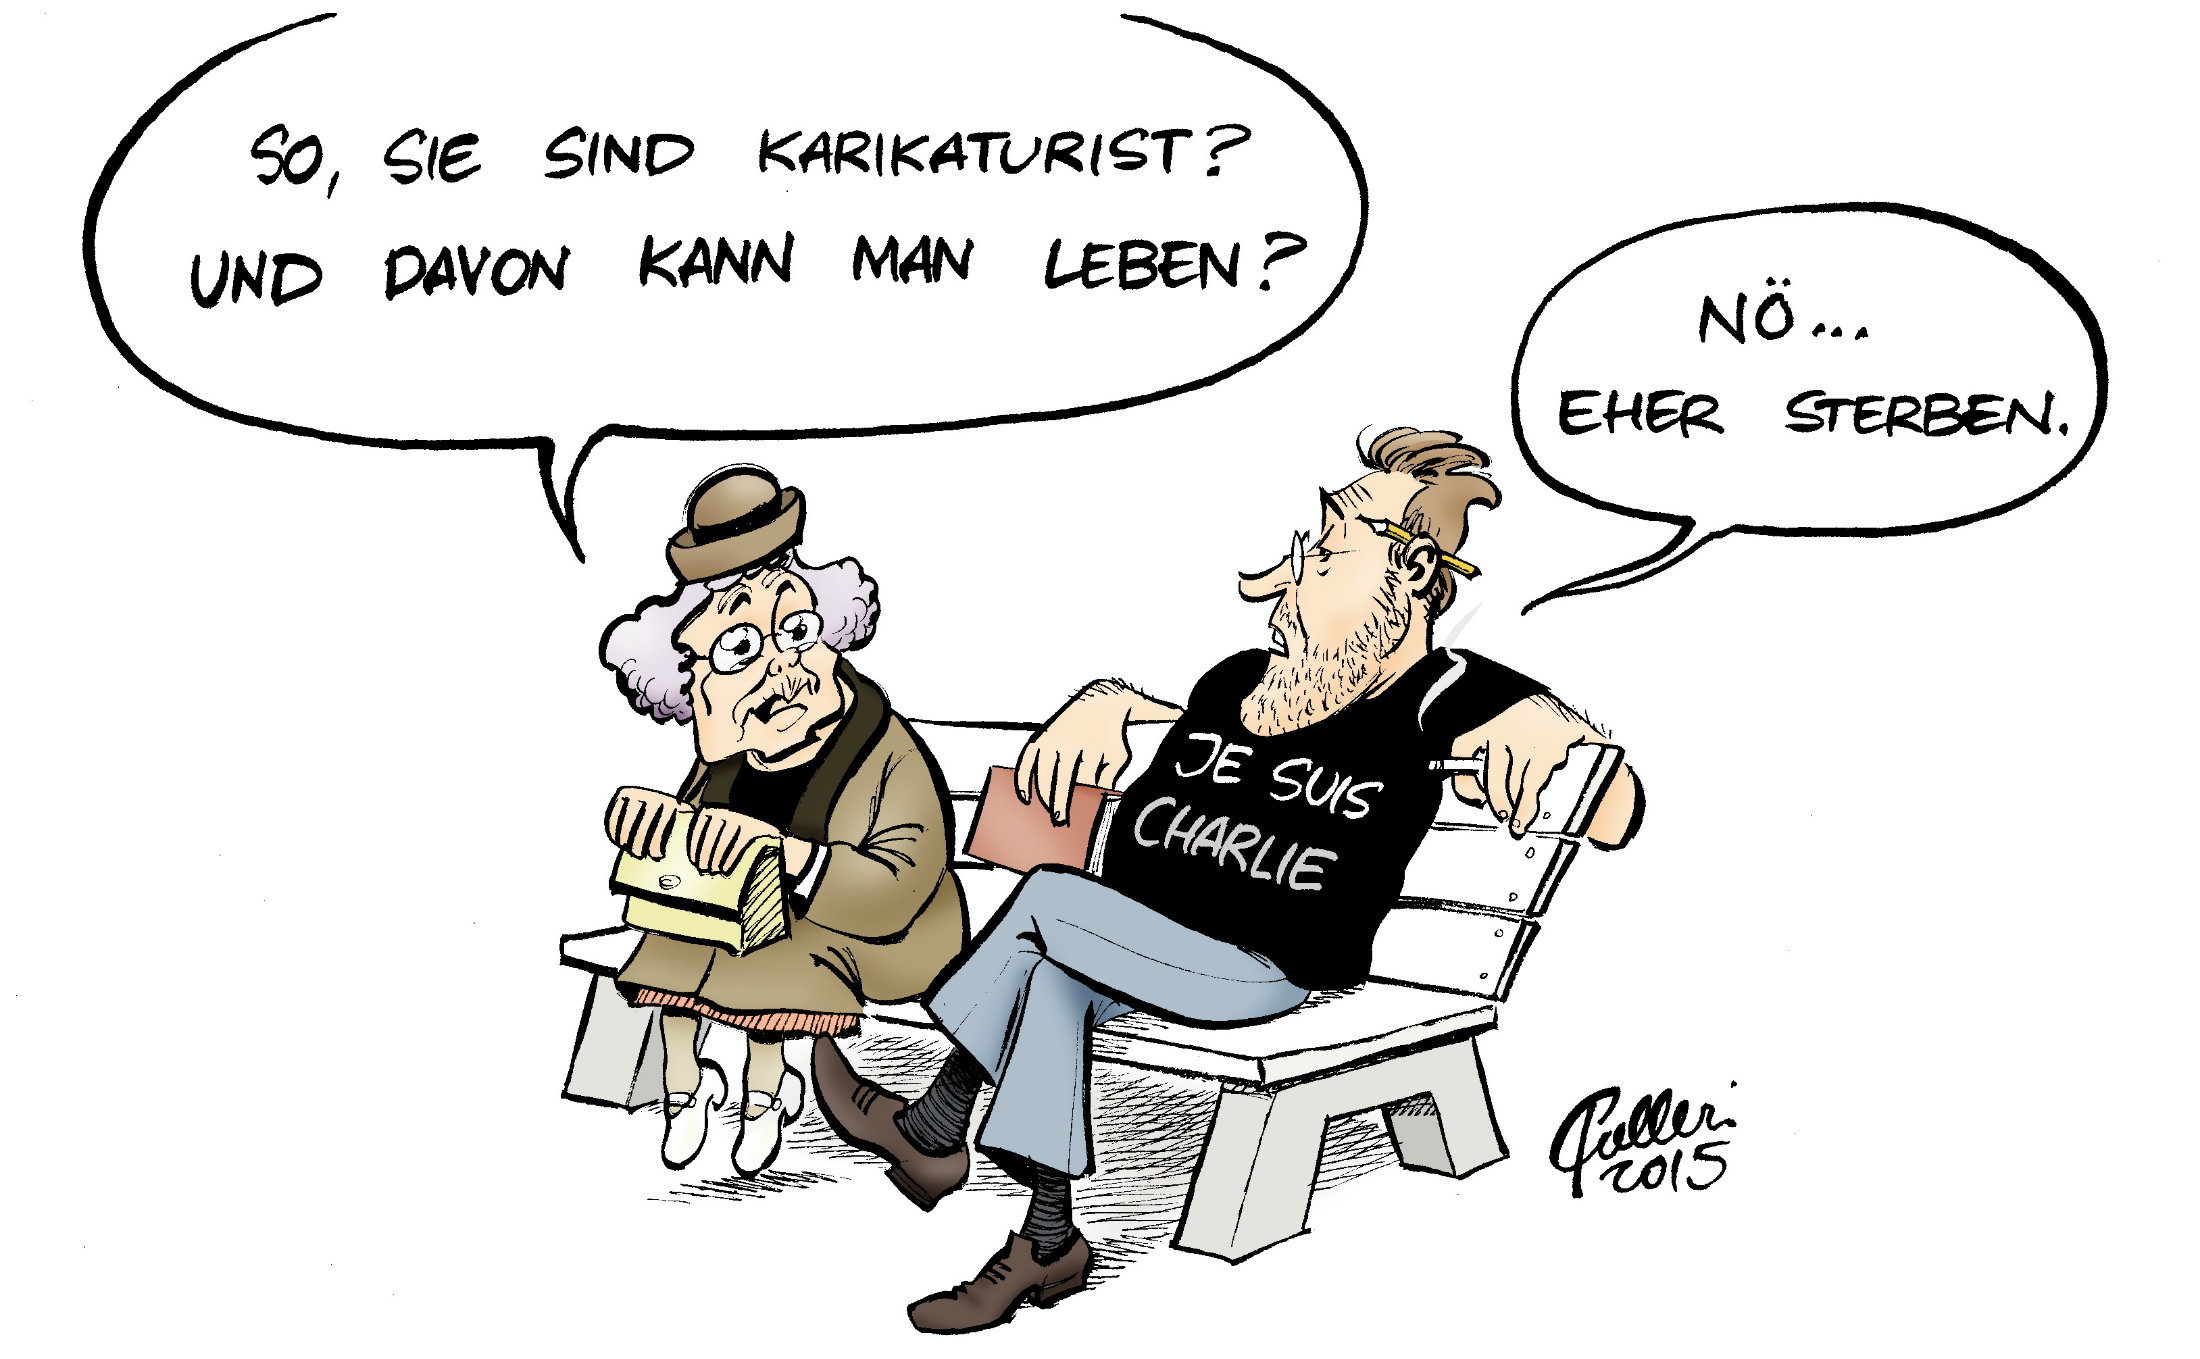 Karikatur über das Leben der Satiriker.